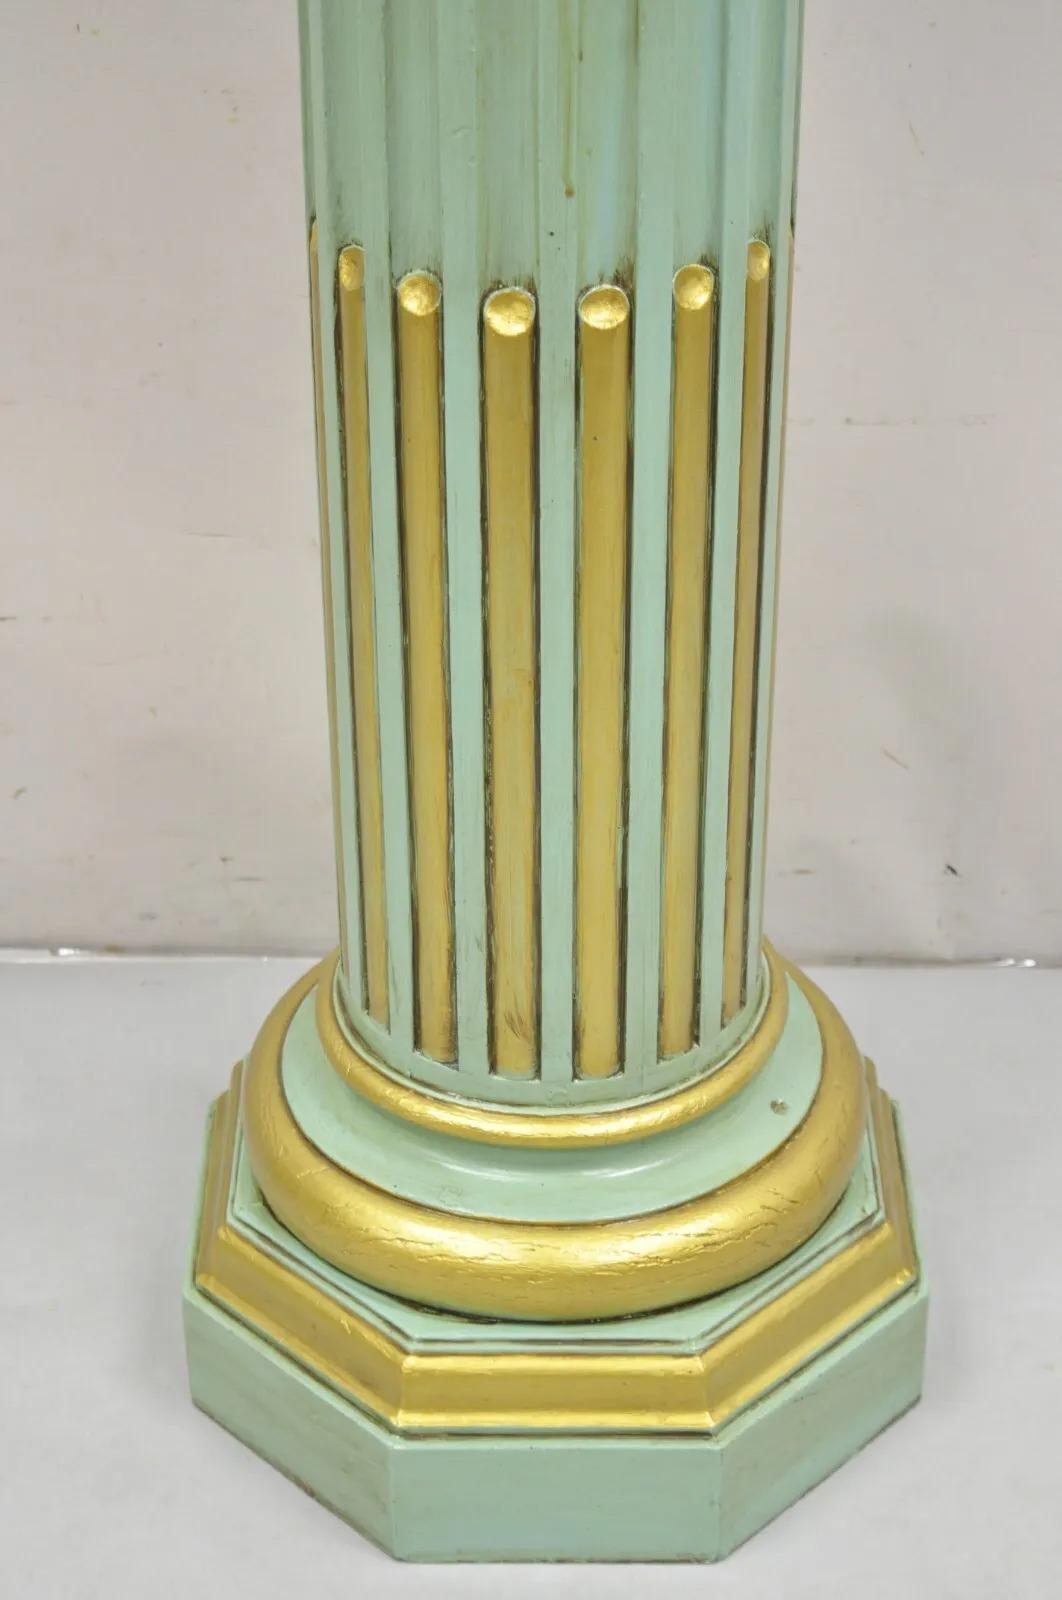 Antike italienische Neoklassik / Französisch Empire-Stil Grün & Gold bemalt geschnitzte Holzsäule Sockel. CIRCA 1900, (bemaltes Finish scheint eine alte Ergänzung zu sein) Maße:  Gesamt: 47